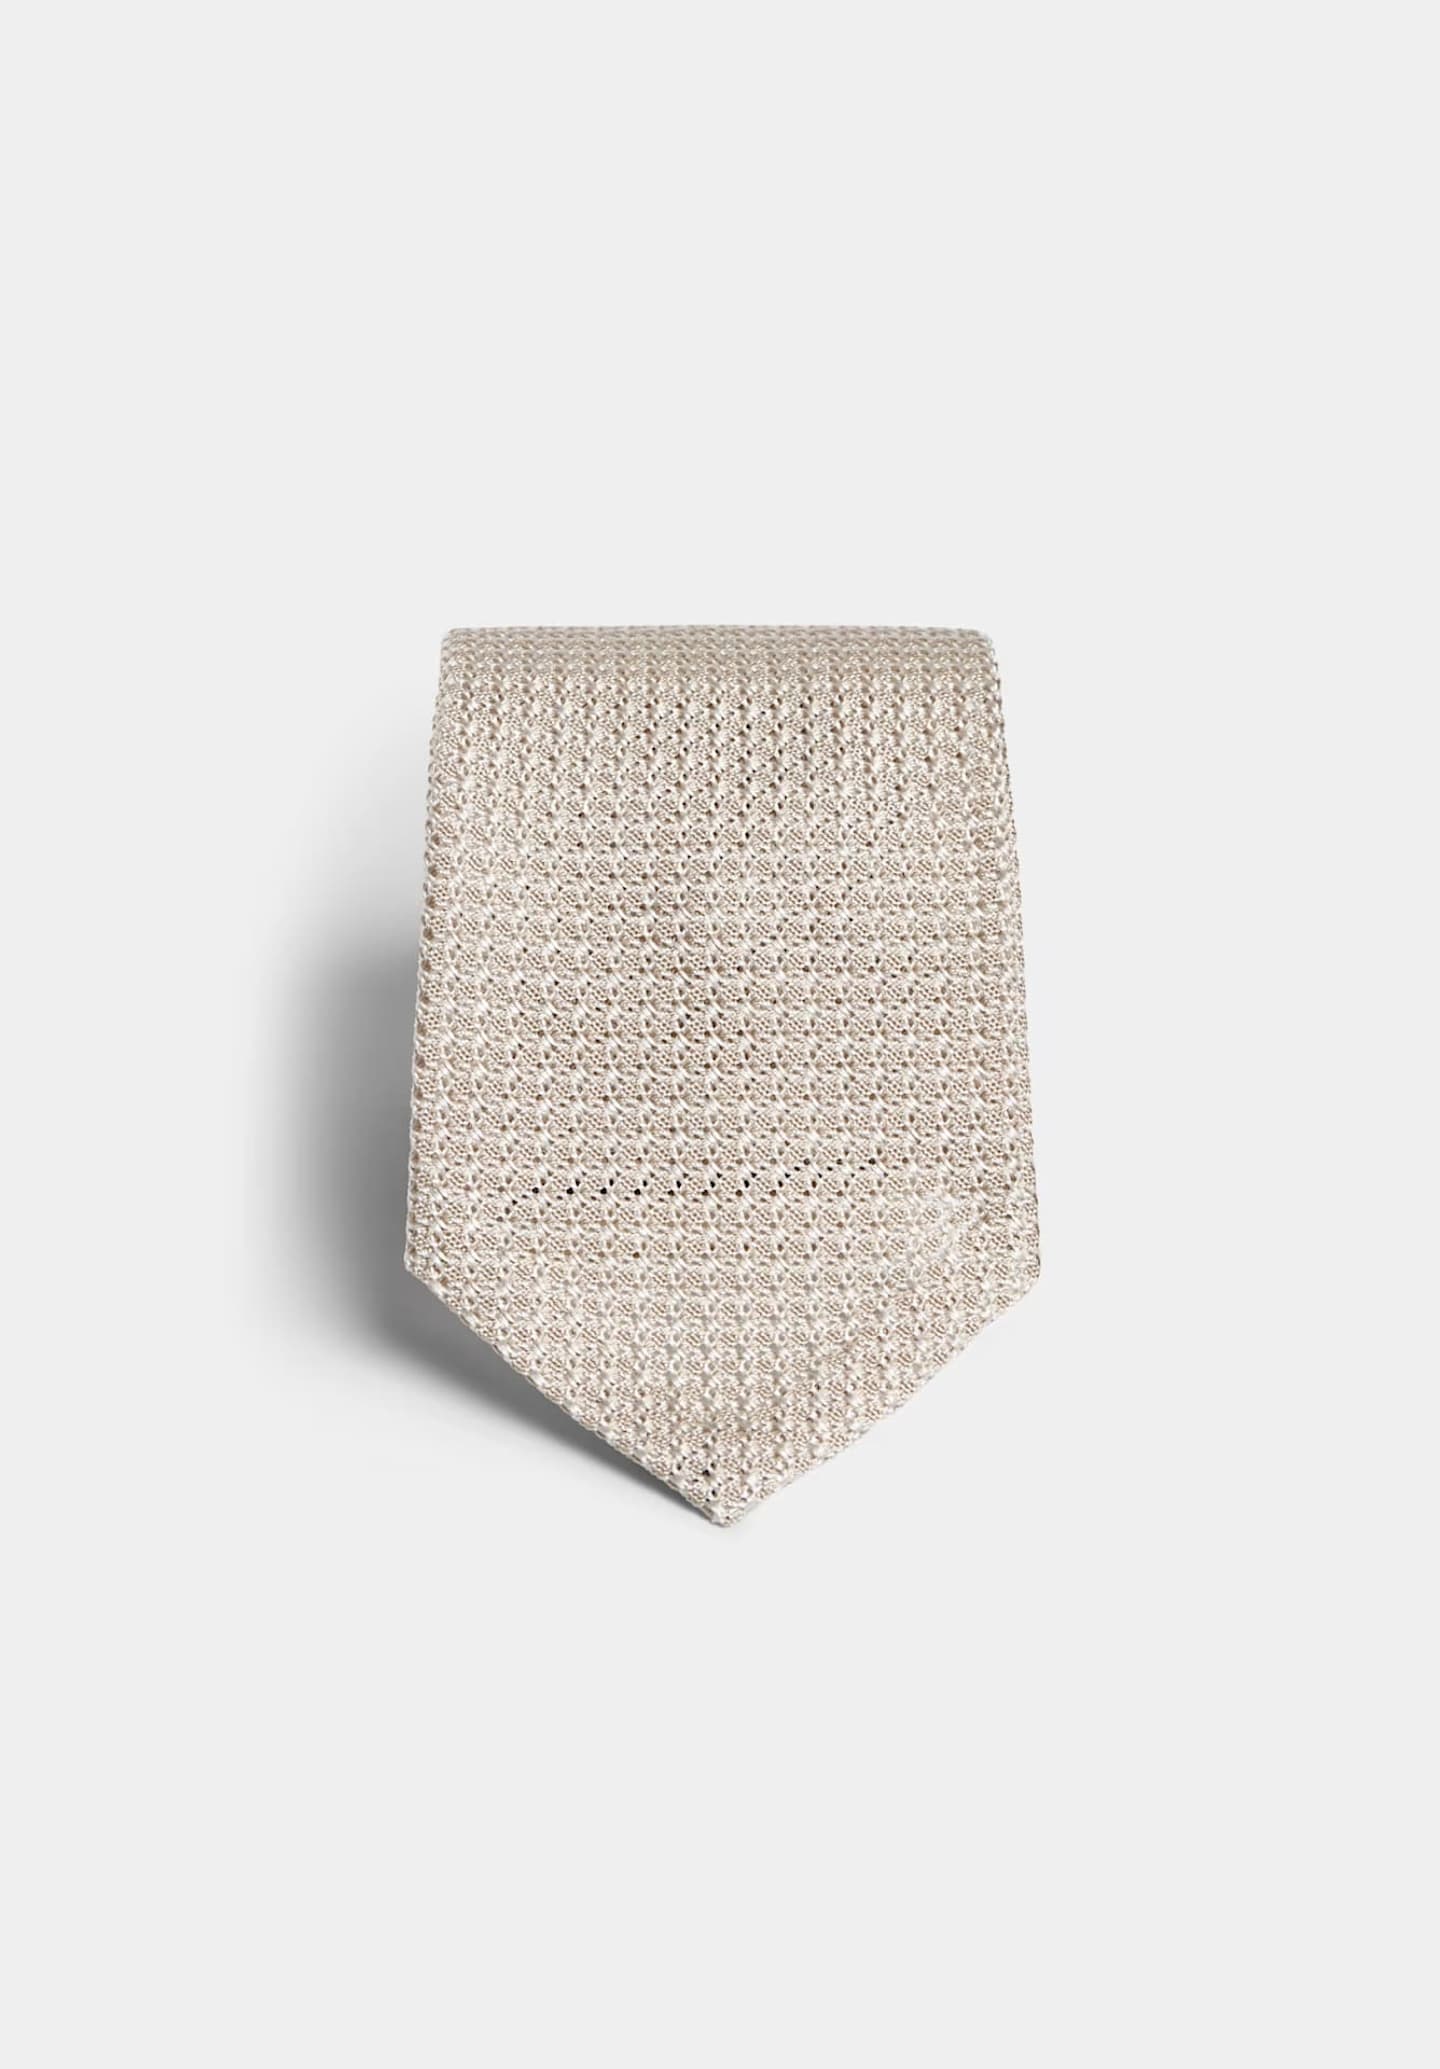 Tessuto grenadine Suitsupply per cravatta marrone chiaro in seta.